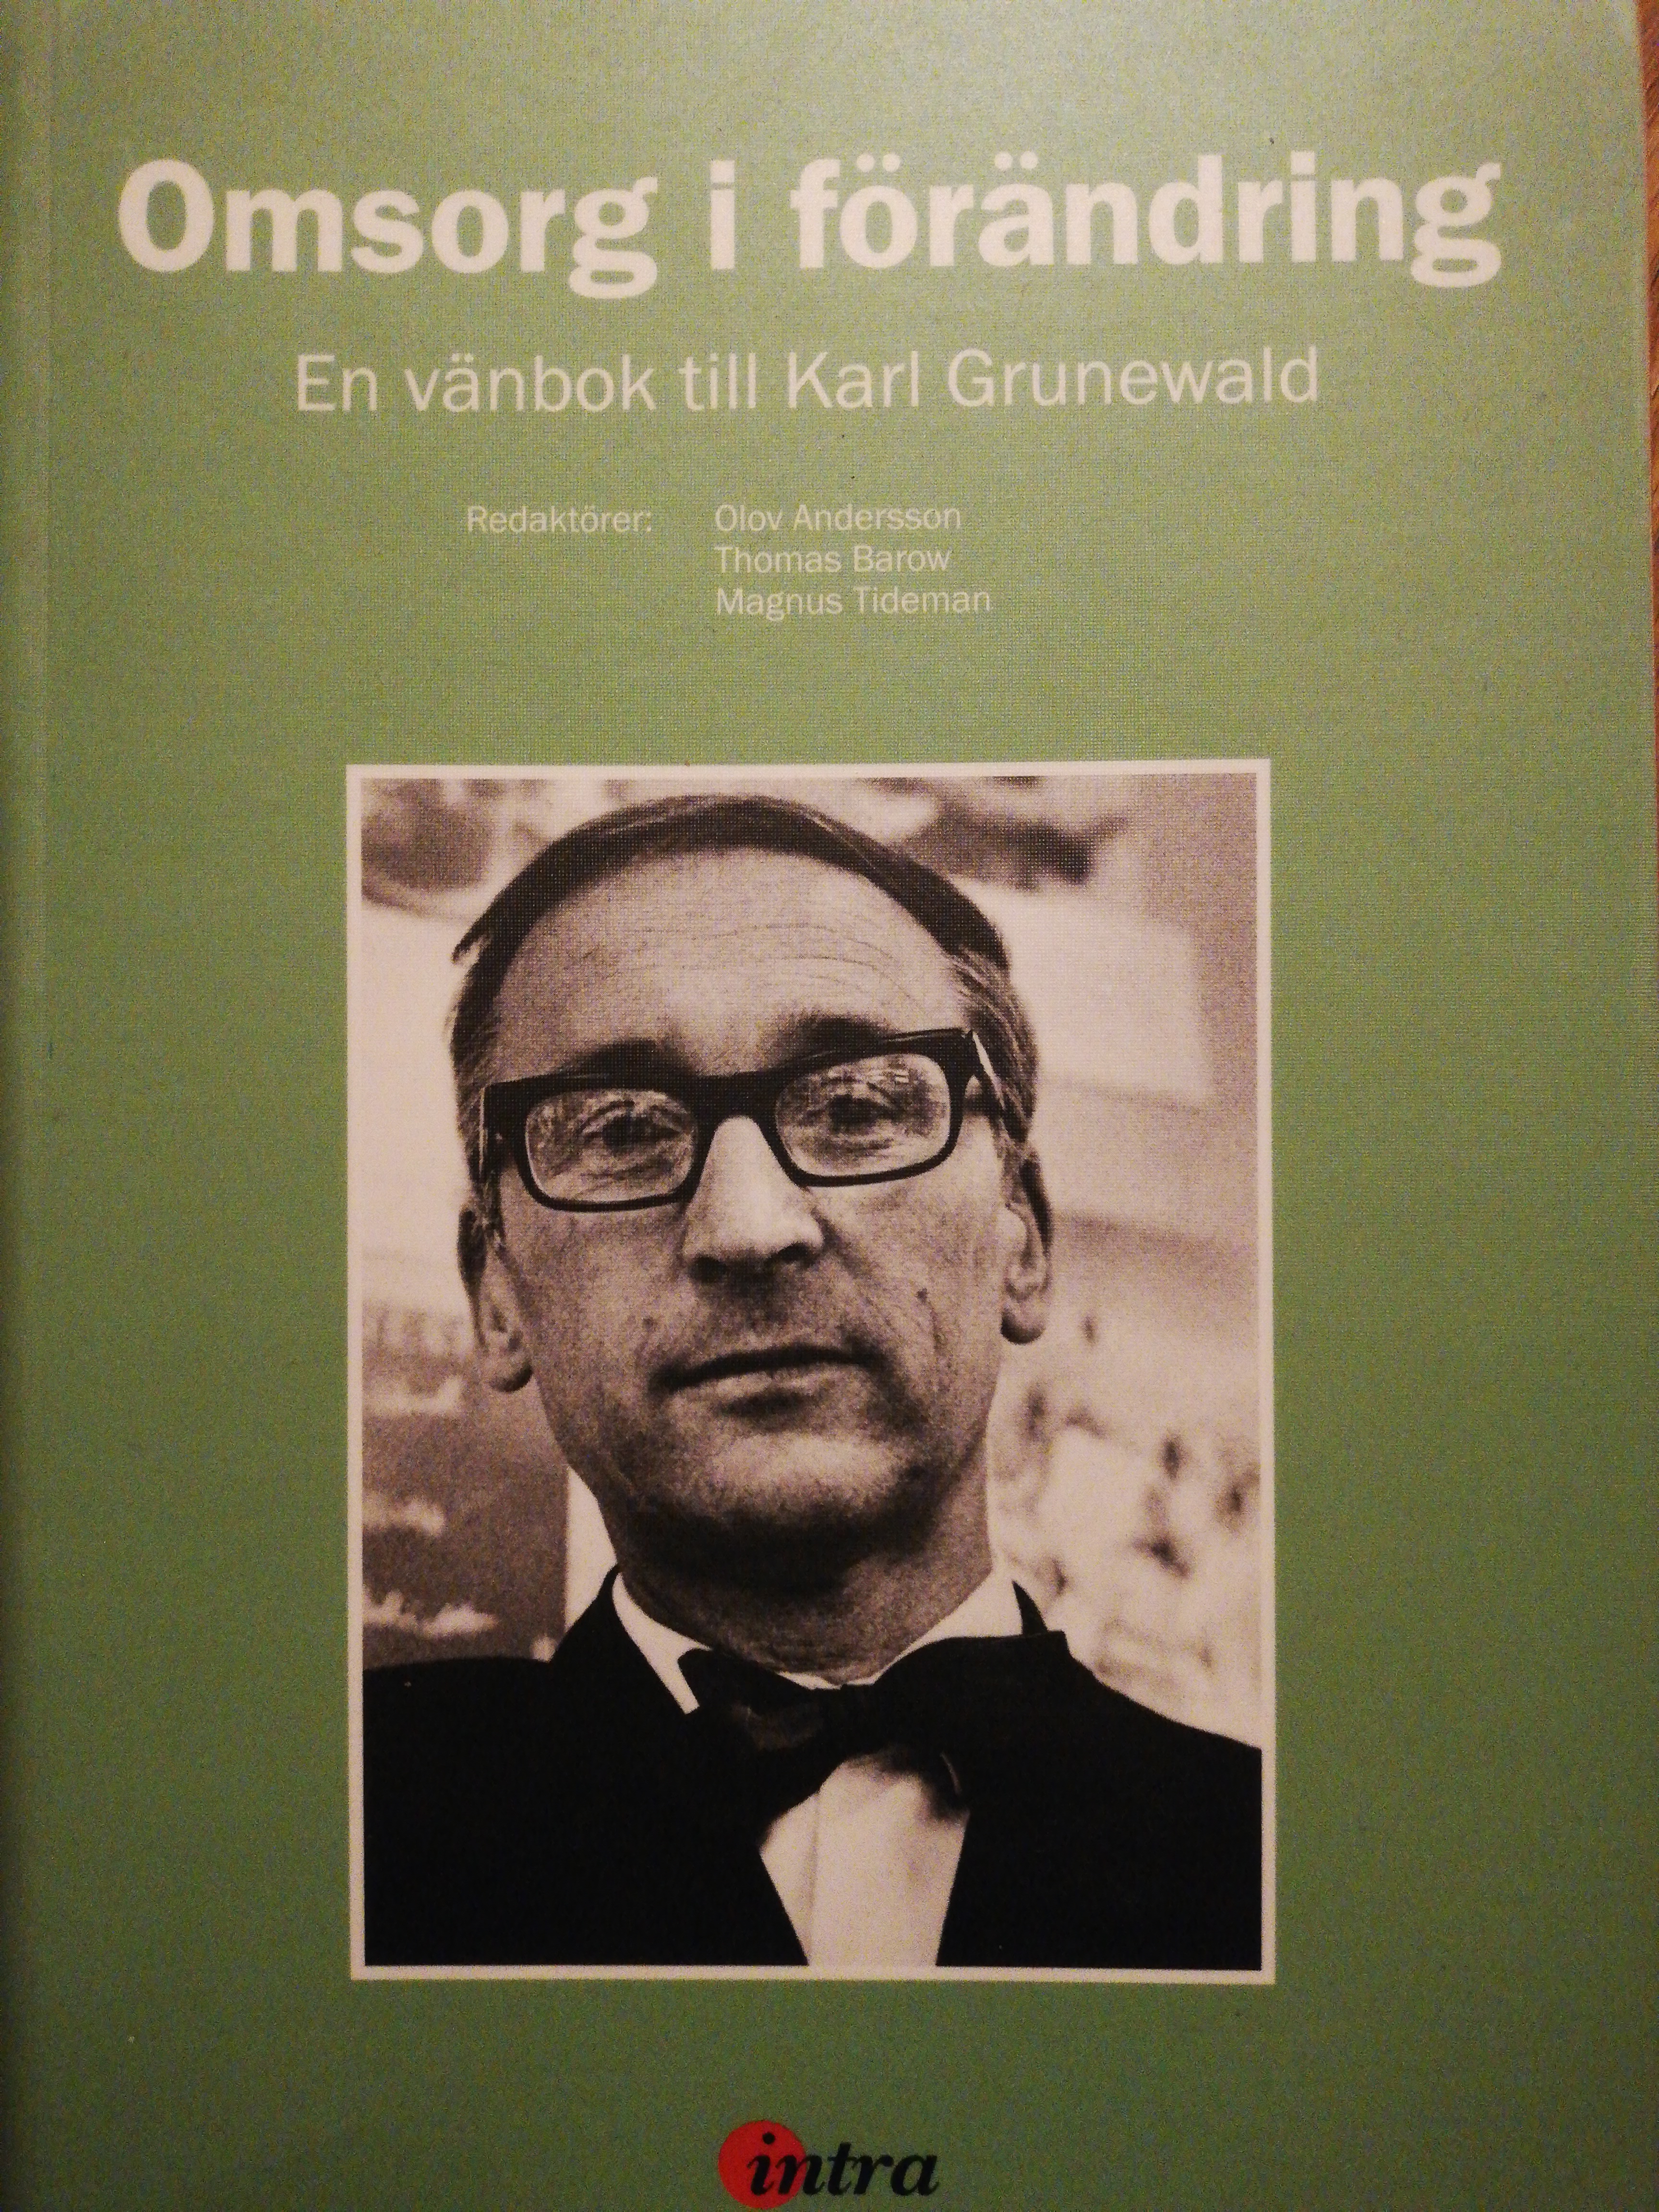 Omsorg i förändring: en vänbok till Karl Grunewald; Karl Grunewald, Olov Andersson, Thomas Barow, Magnus Tideman; 2011